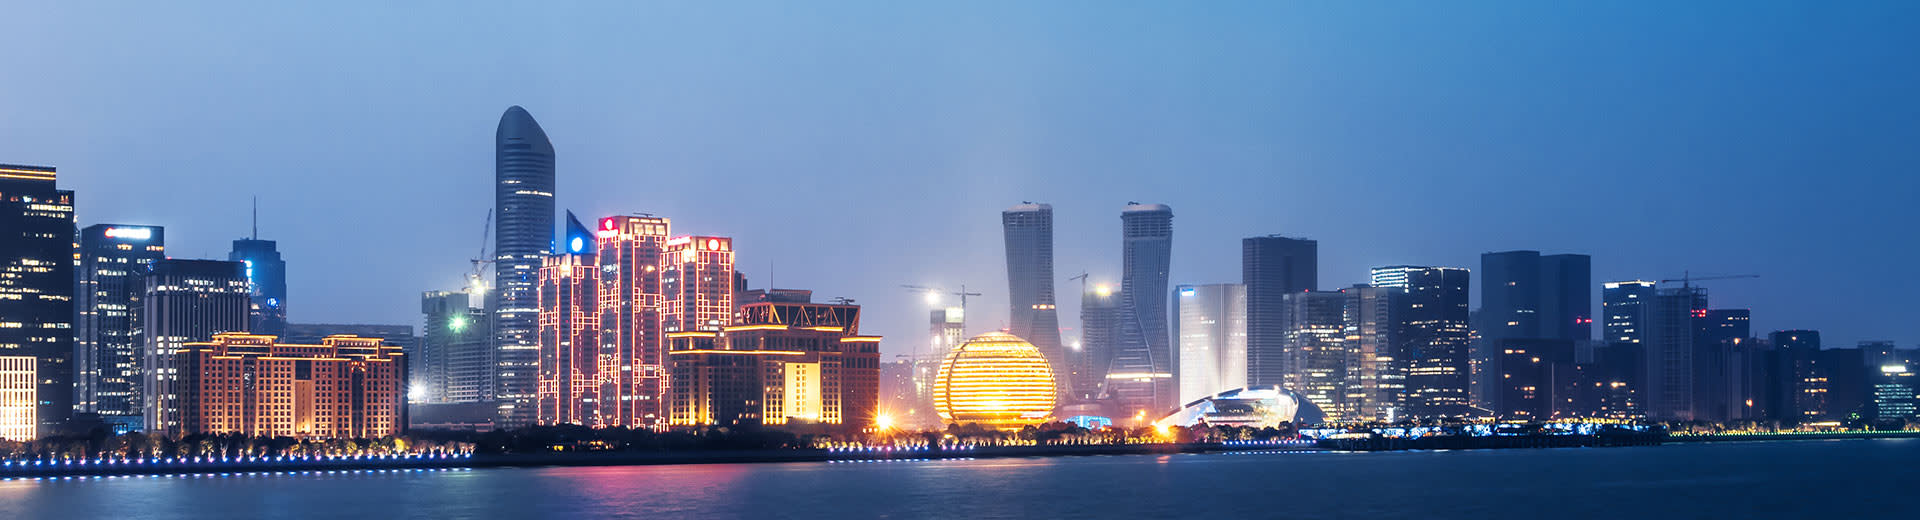 Una brillante variedad de rascacielos ilumina el cielo nocturno en Hangzhou.